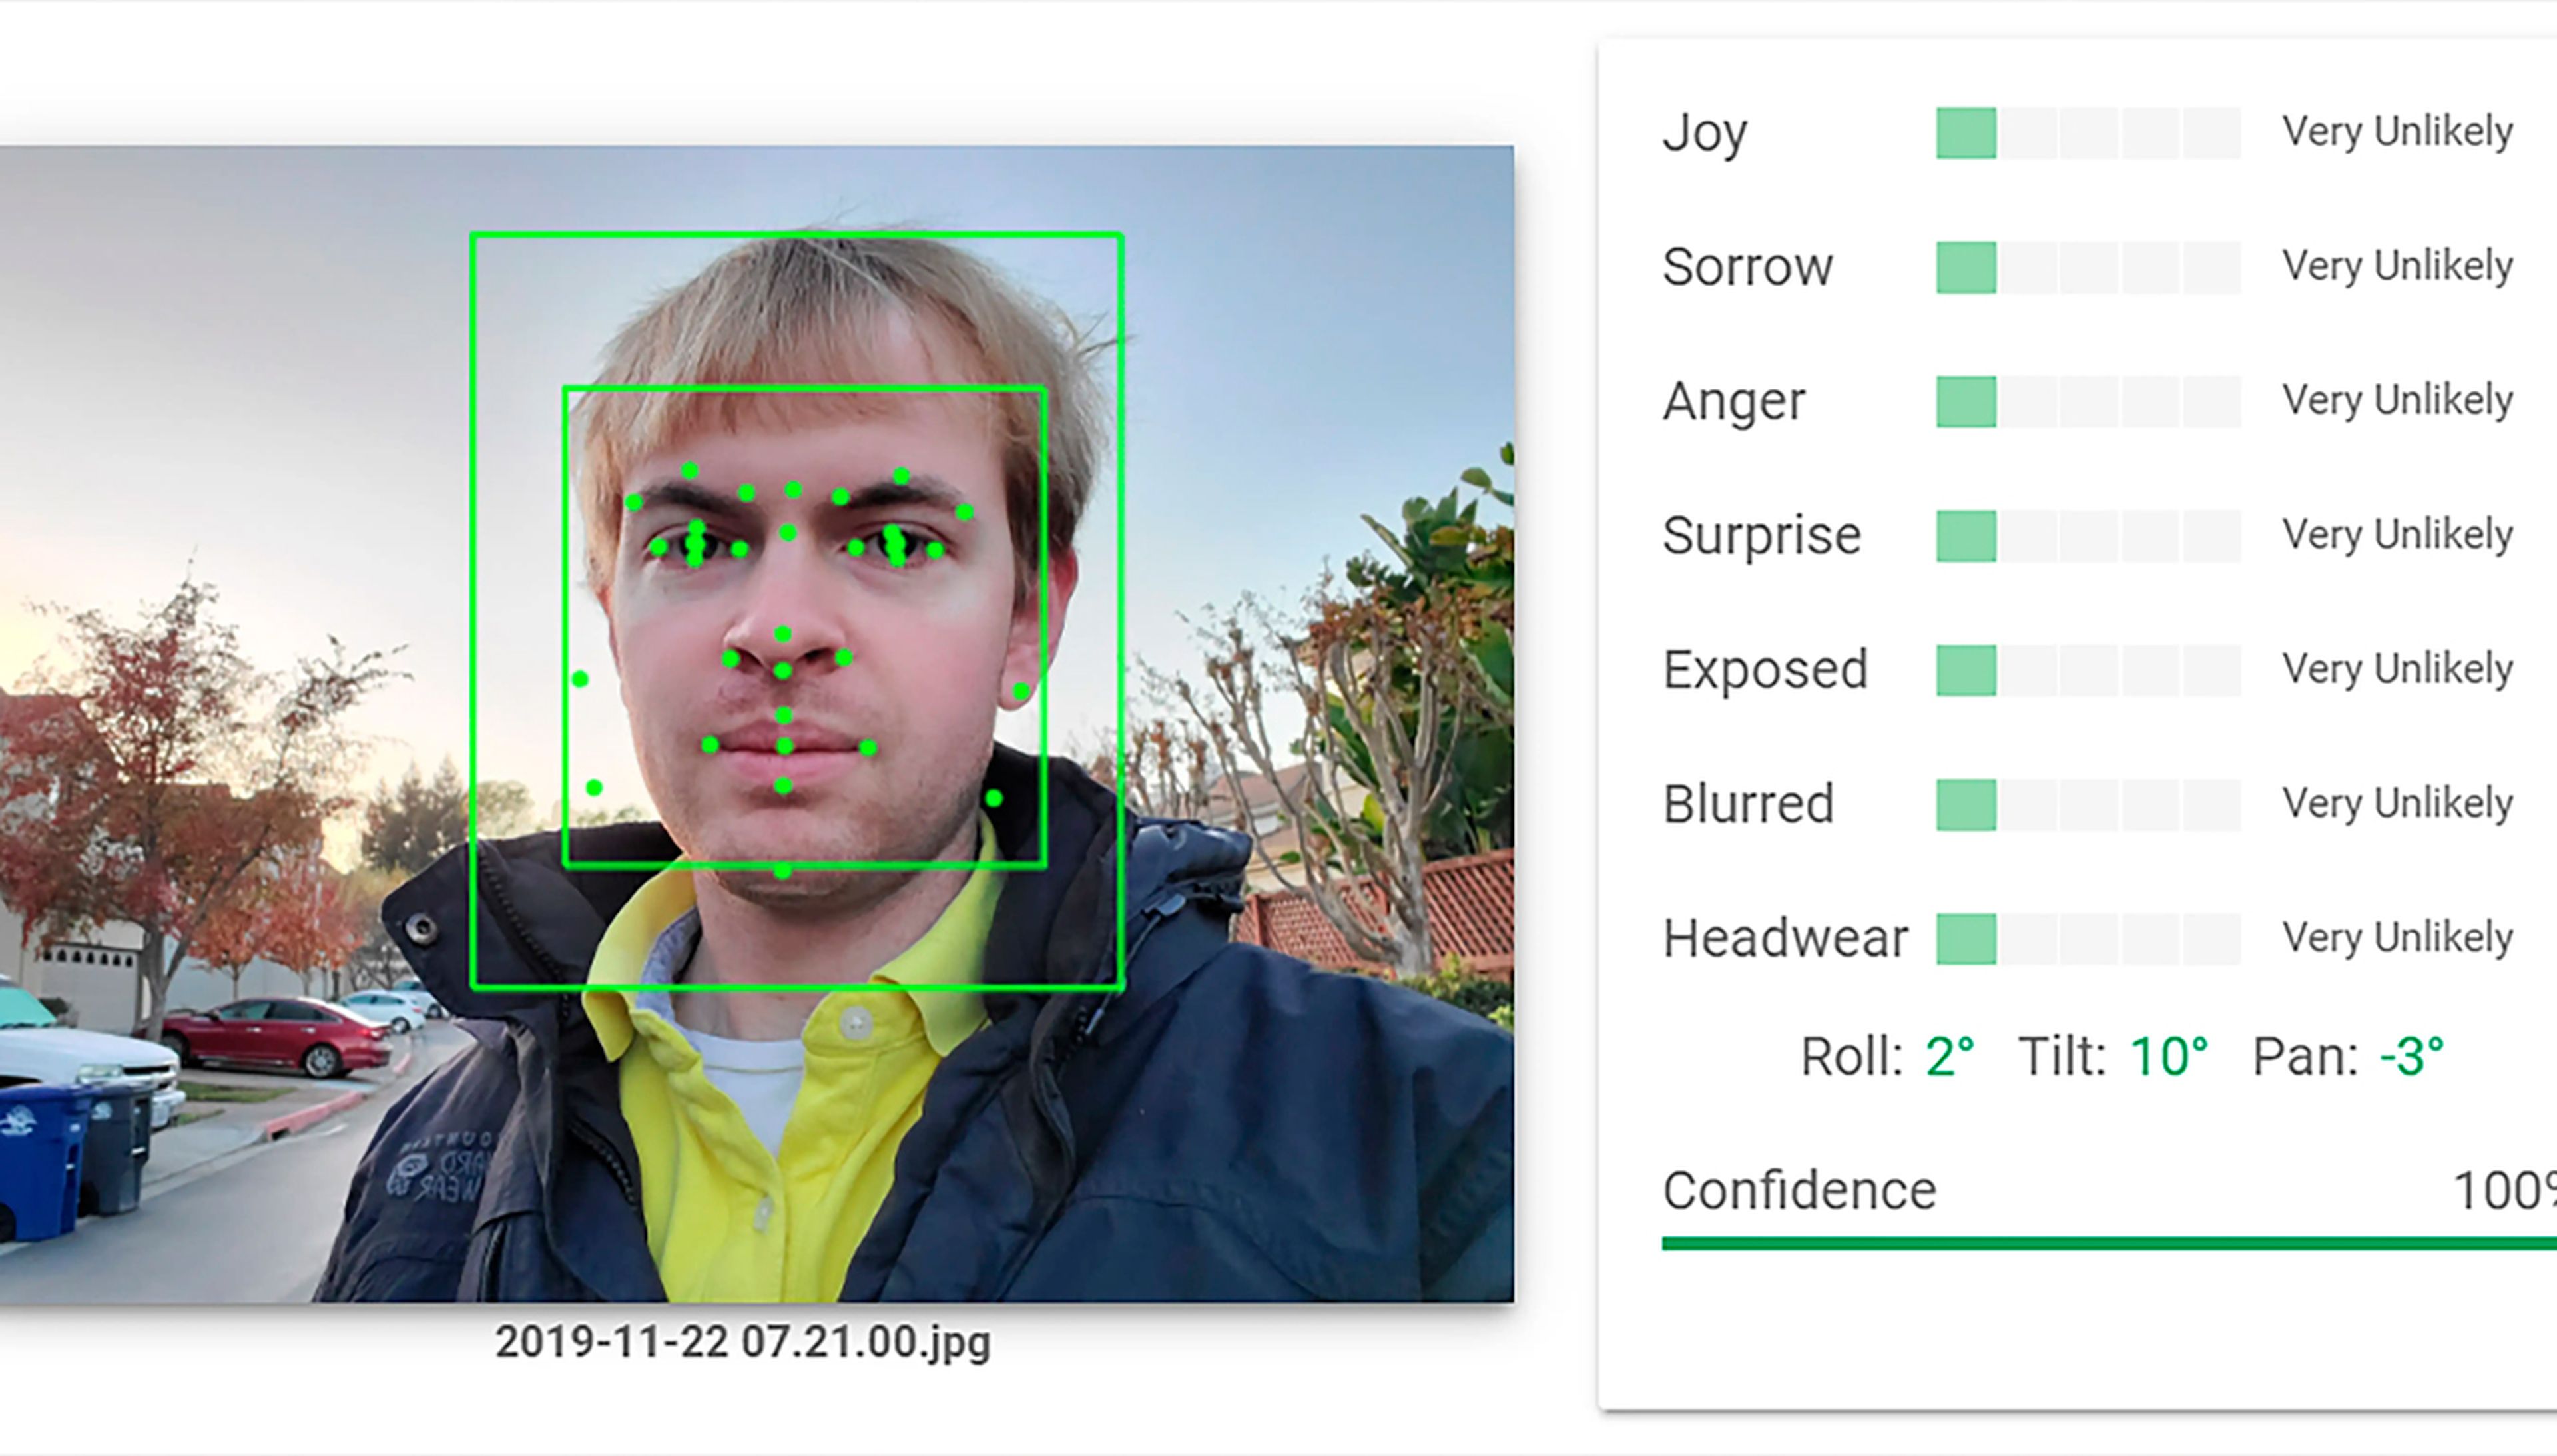 Un ejemplo de análisis facial con IA de las emociones. Muchas empresas afirman que su tecnología puede saber lo que siente una persona.